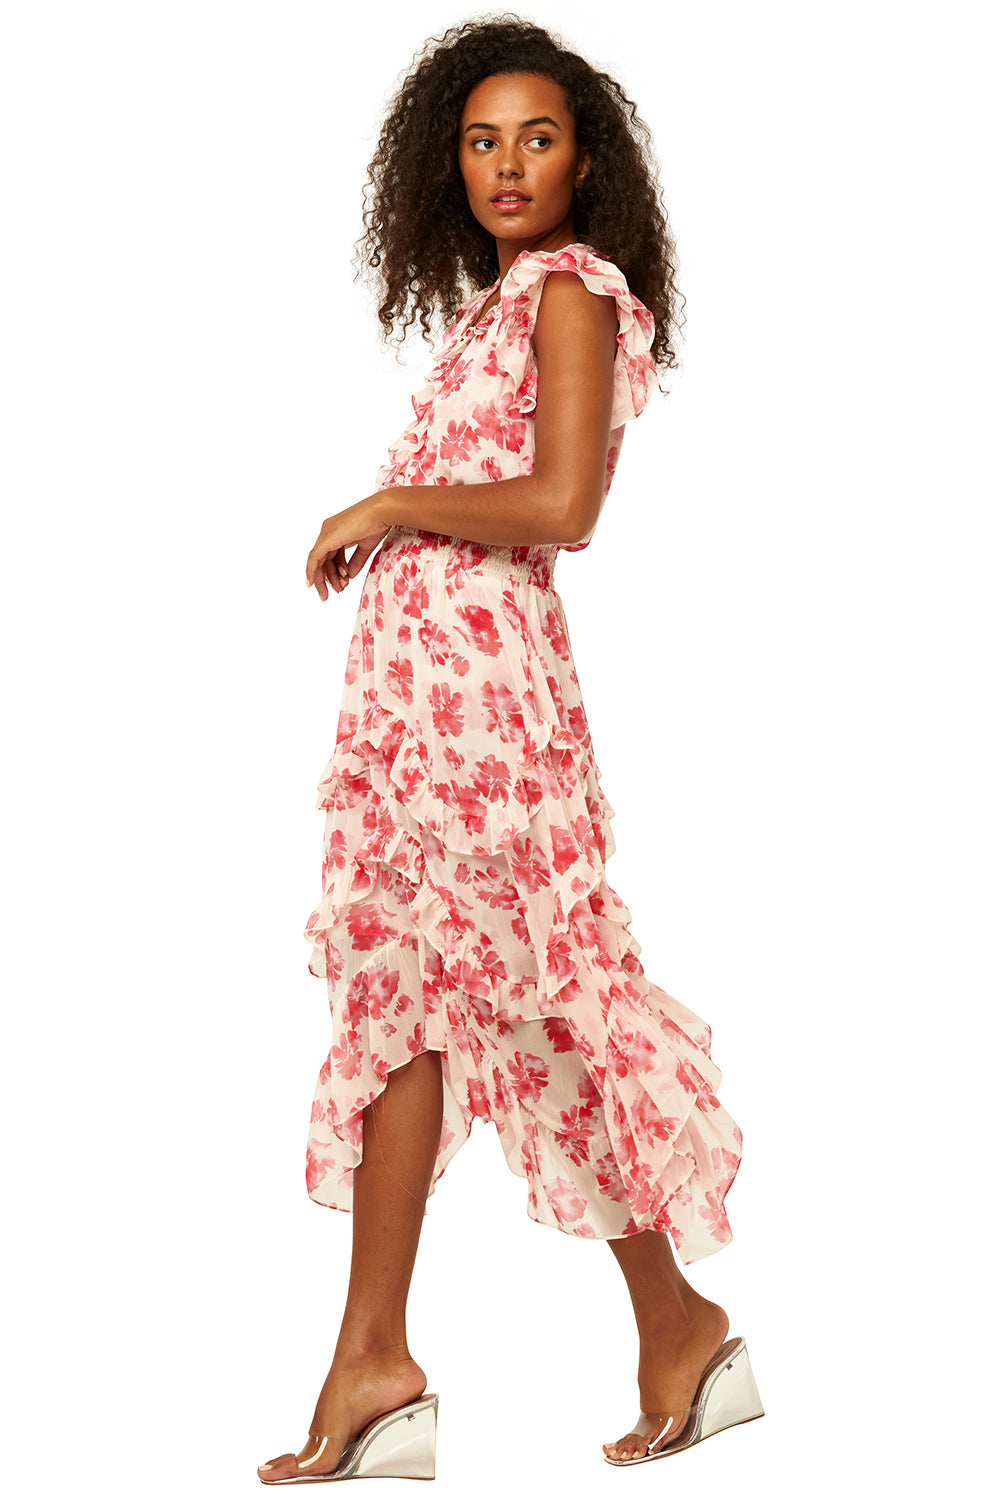 Misa - Dakota Dress in Watermelon Blossom